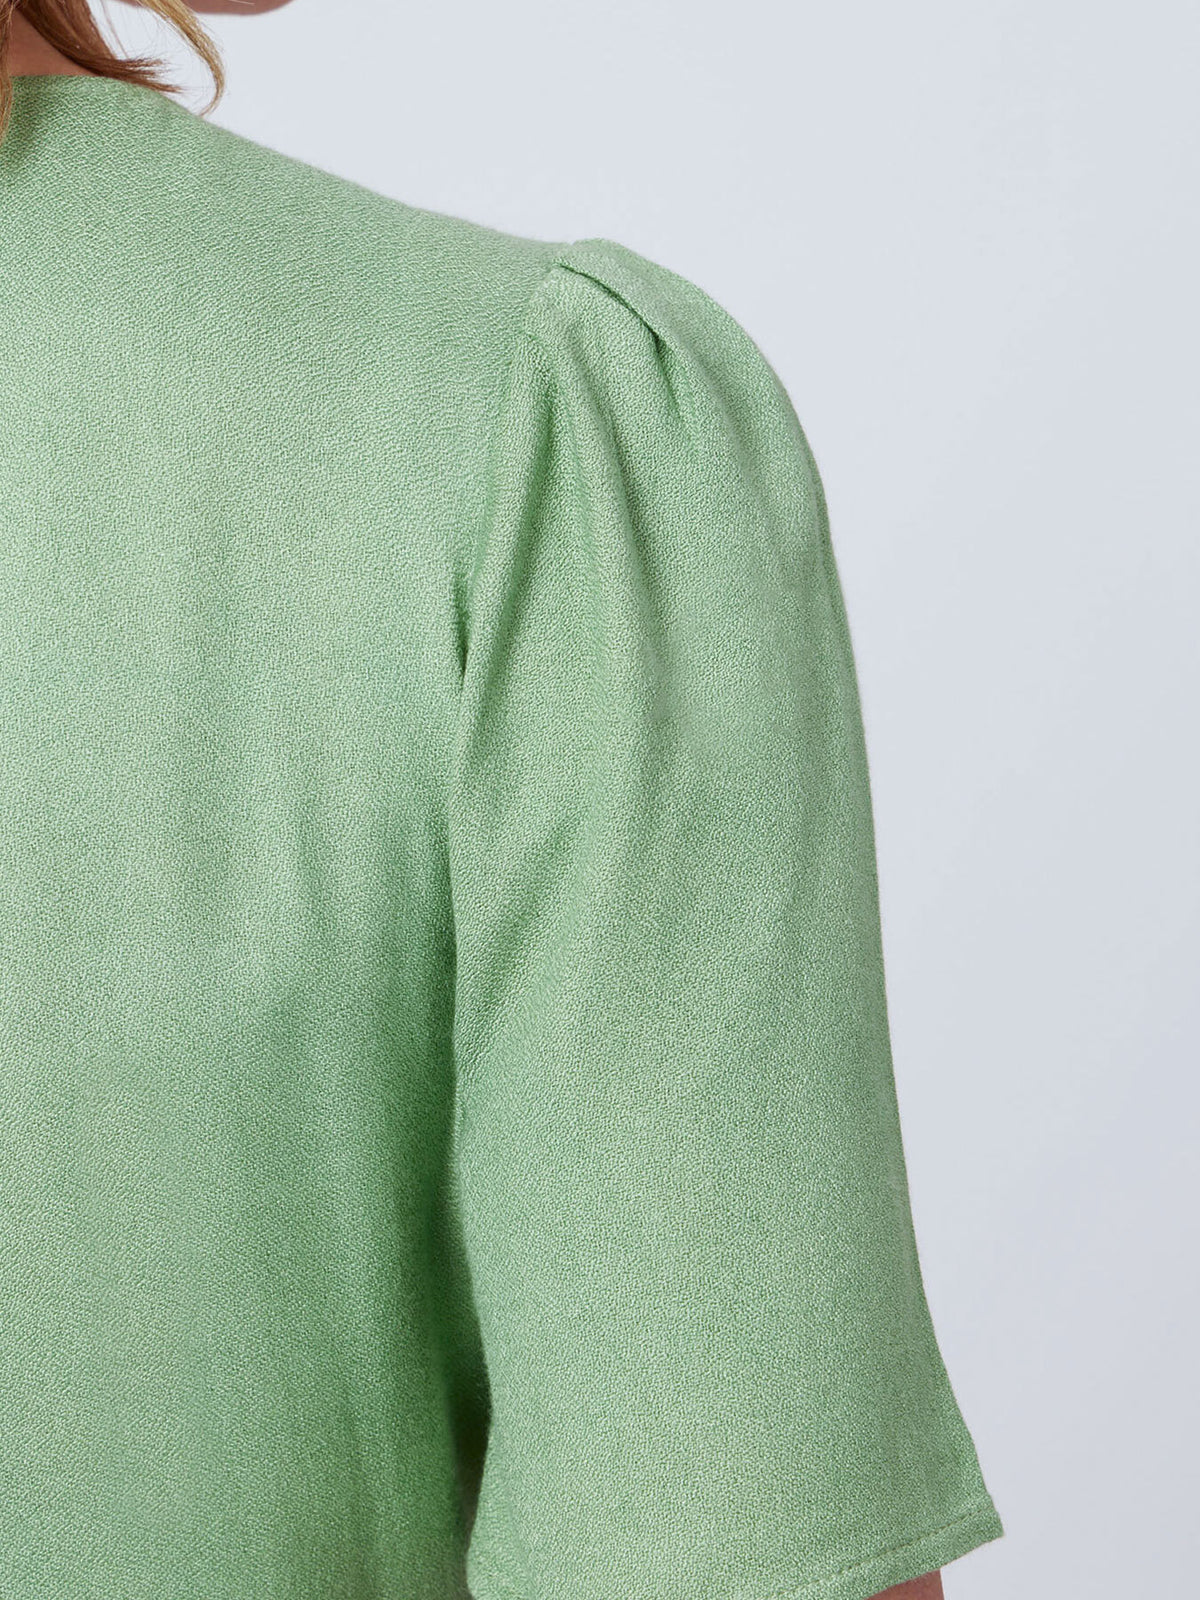 Lesley - Midi Button Wrap Dress - Green